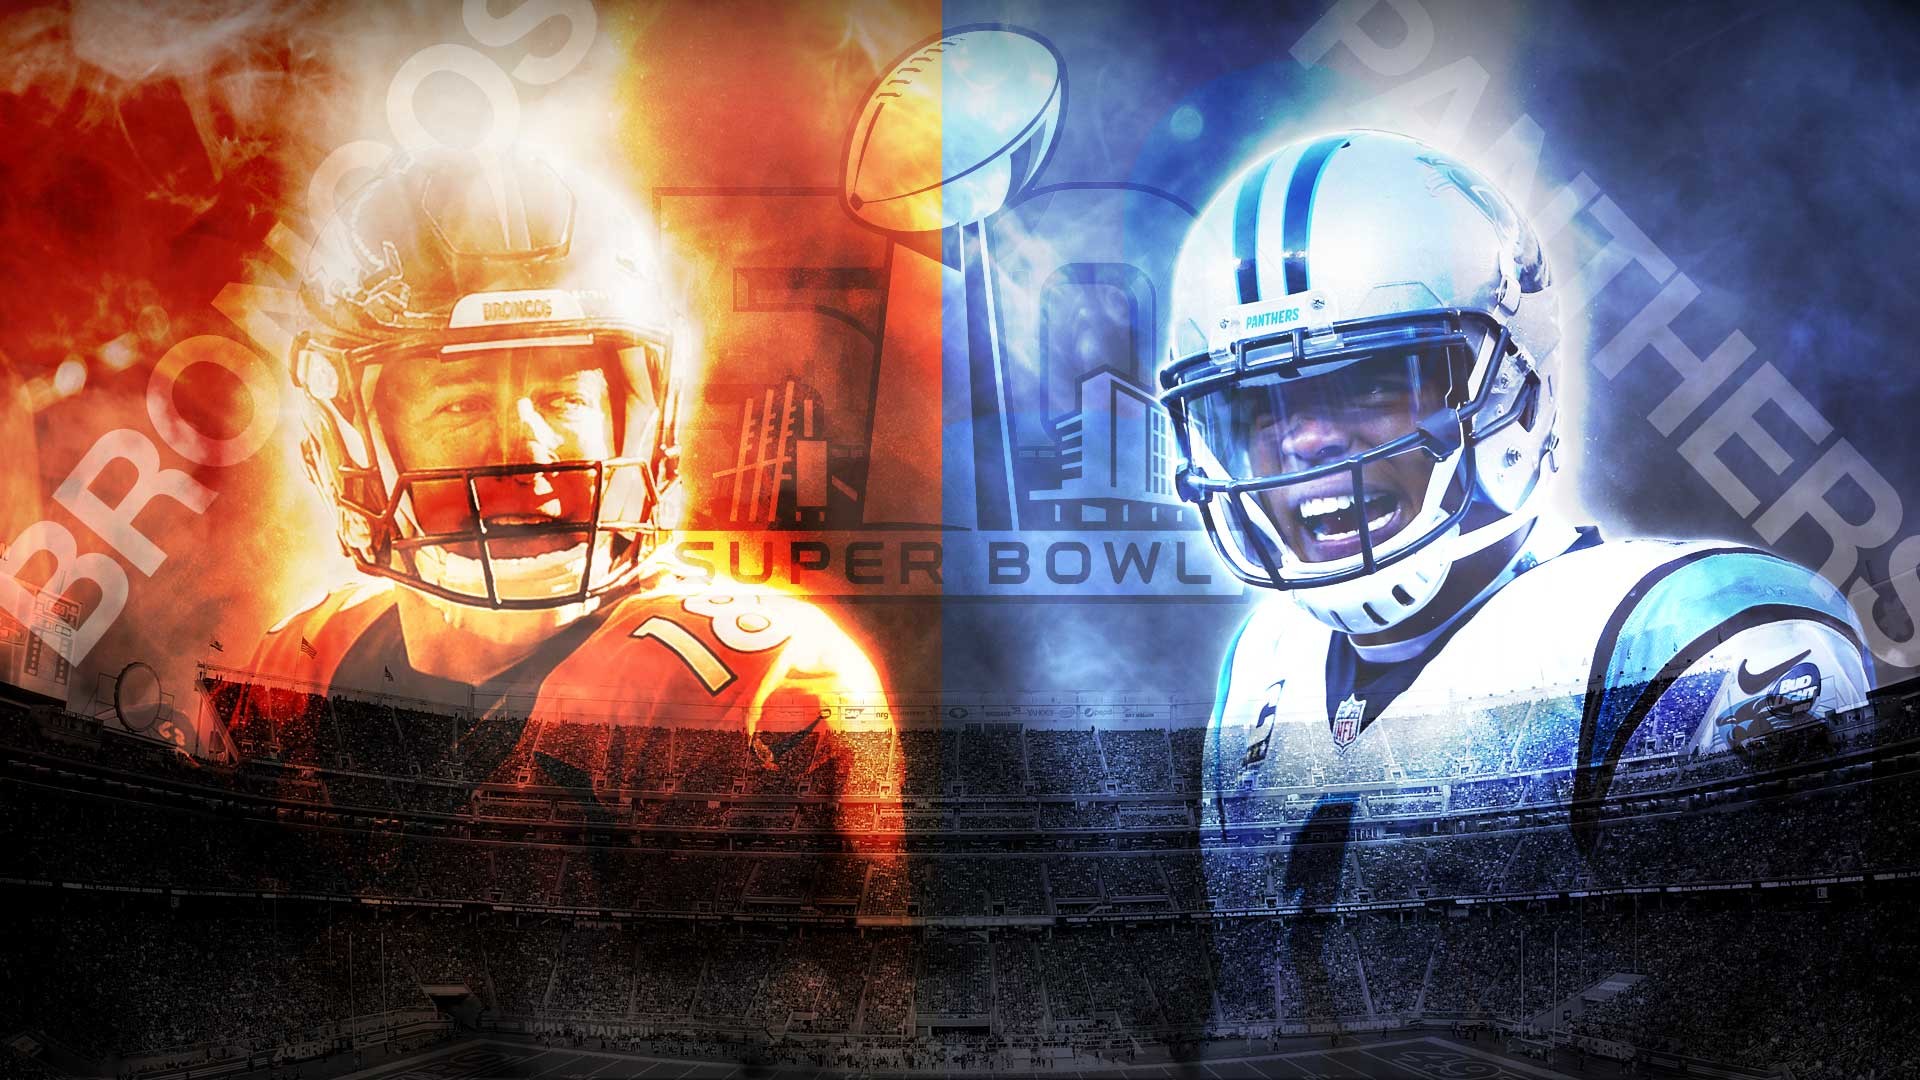 1920x1080 Super Bowl 50 Denver Broncos vs Carolina Panthers date time TV 